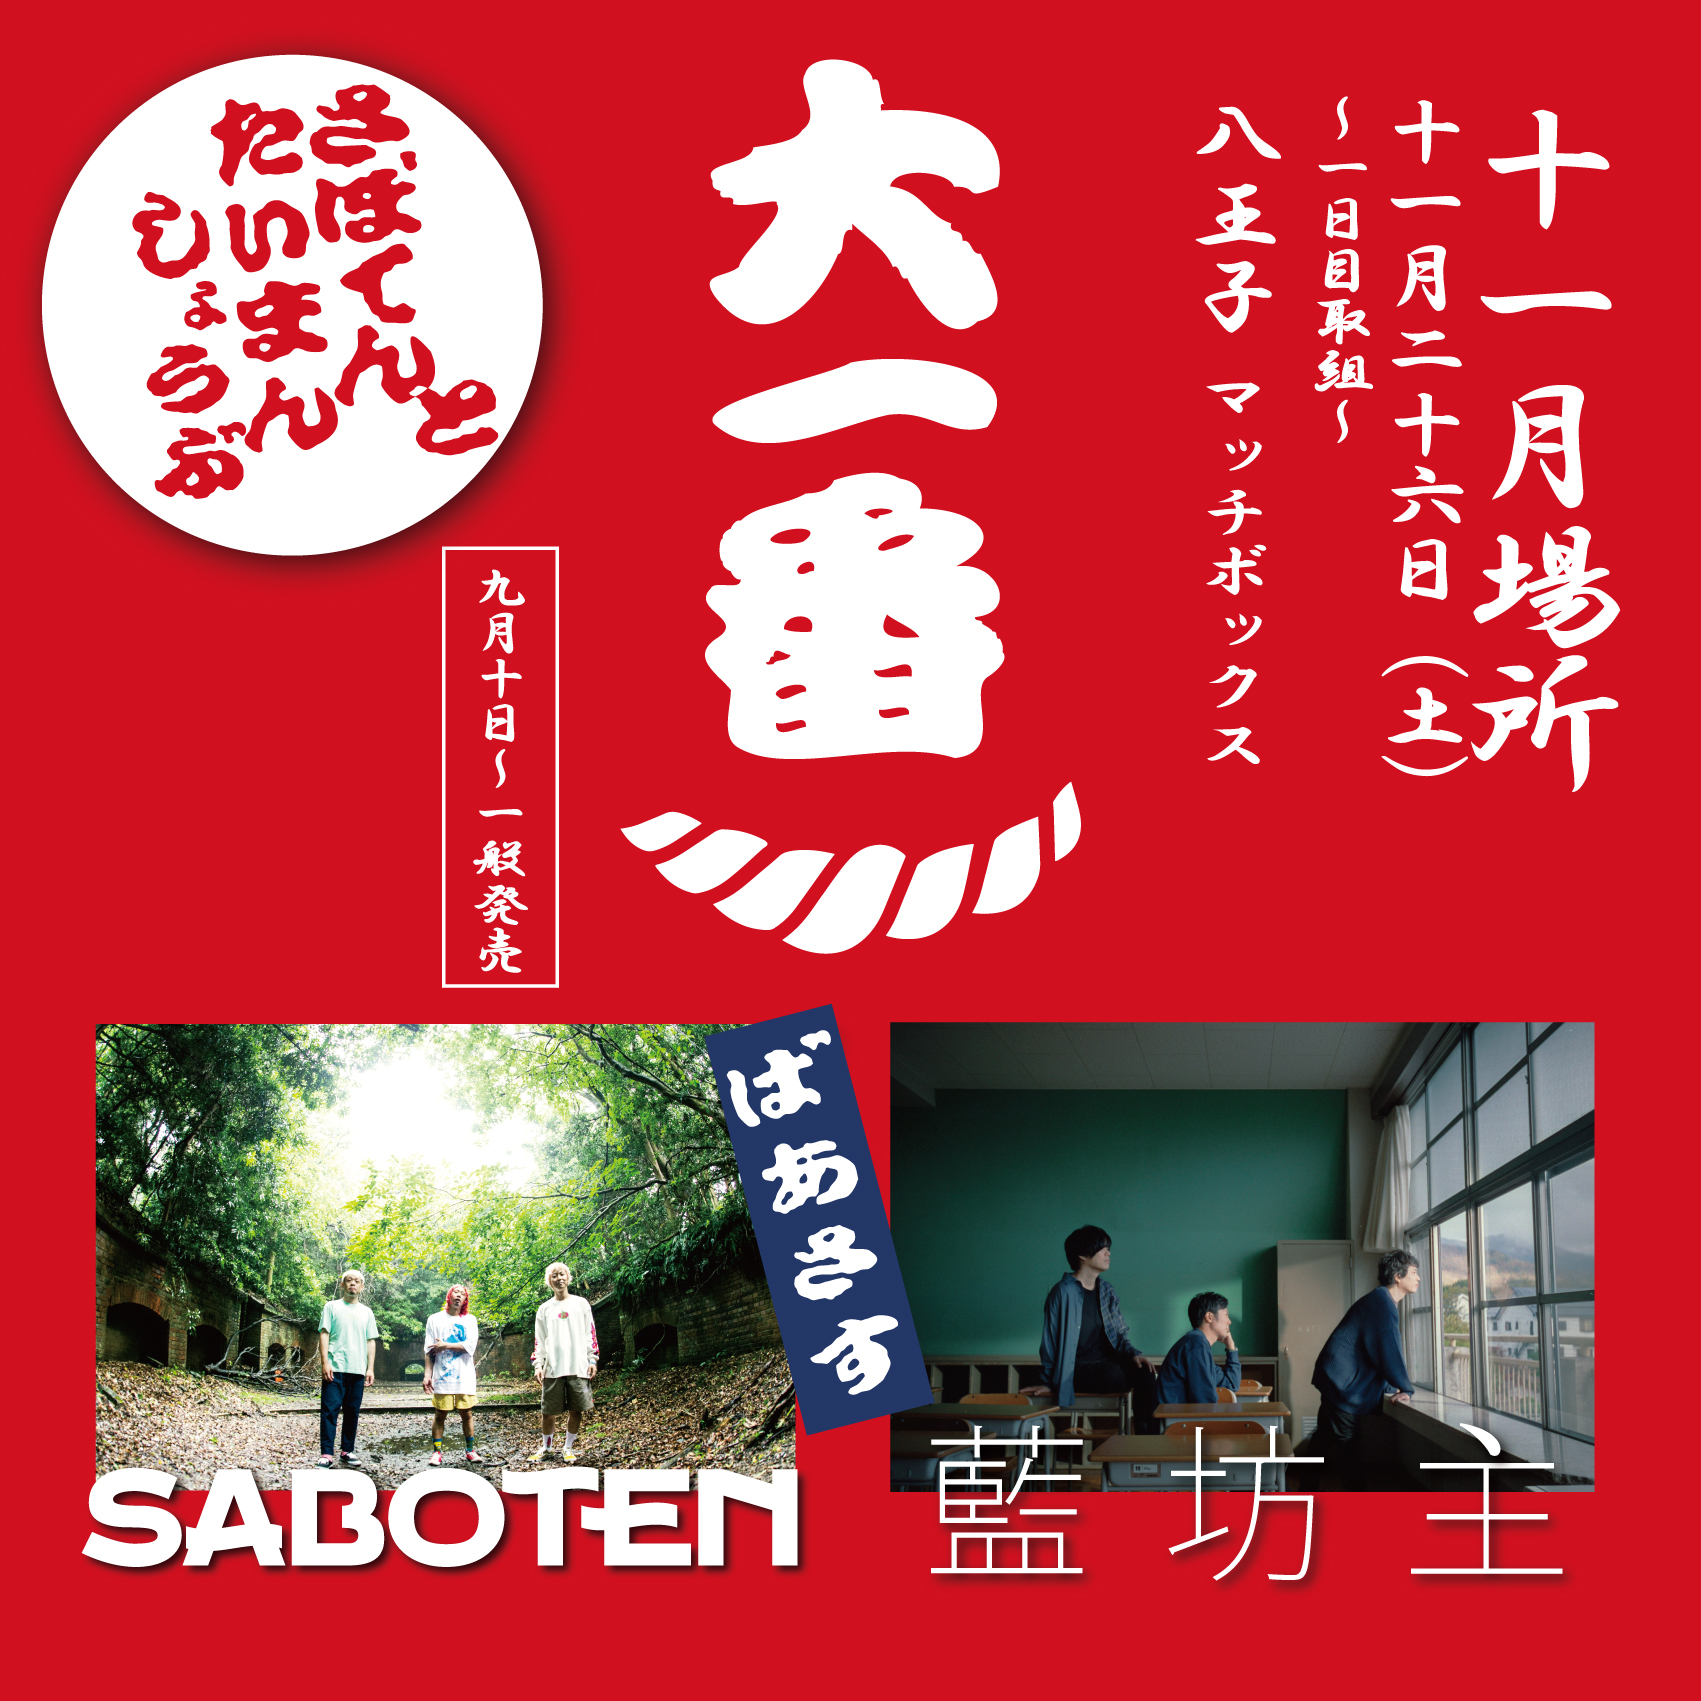 11 26 土 Saboten企画 Saboten 大一番 への出演が決定 藍坊主